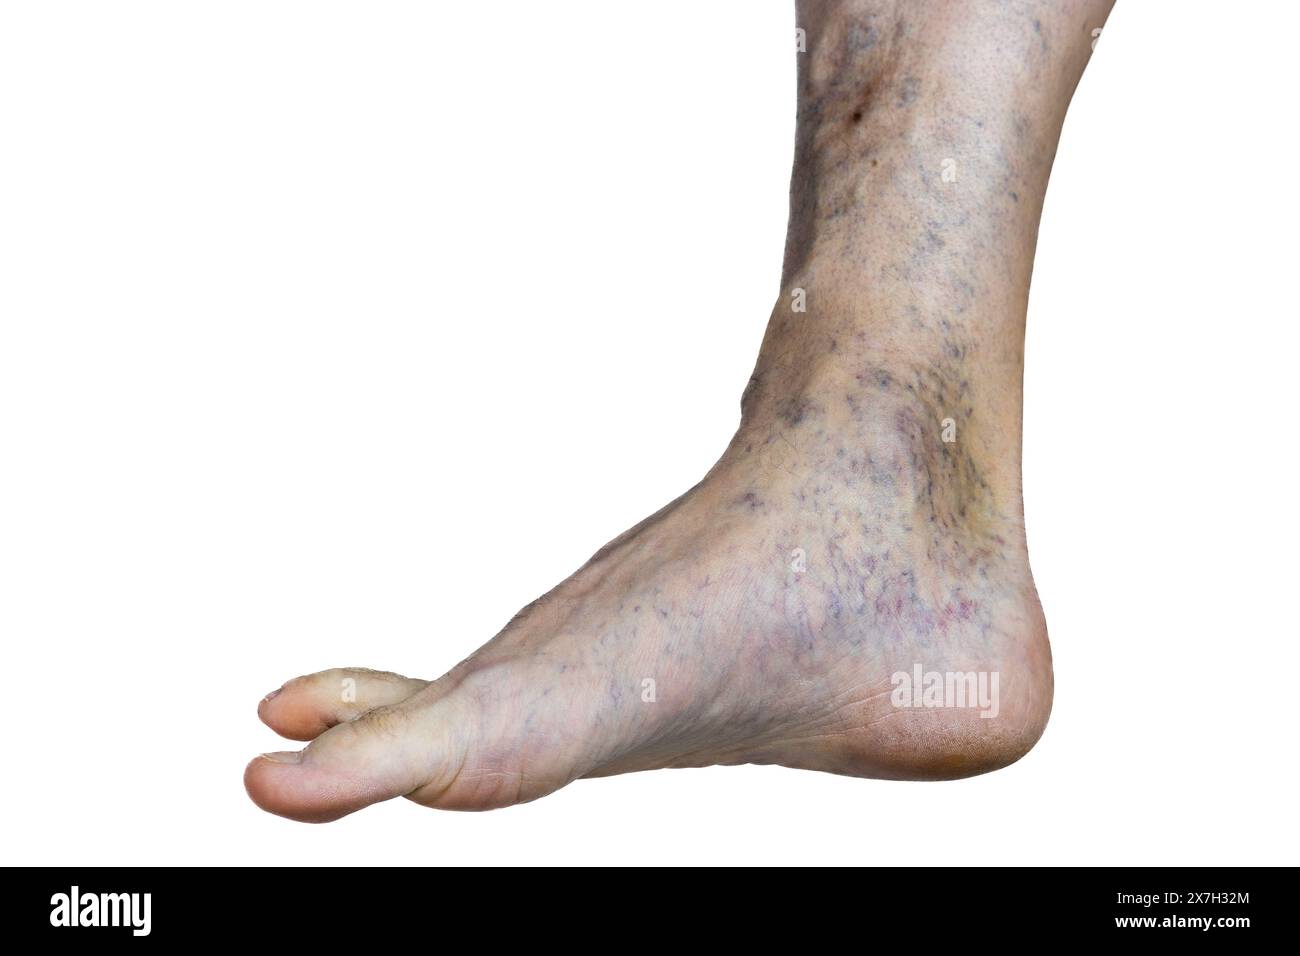 Questa immagine rivela una gamba afflitta da vene varicose pronunciate, indicando potenziali problemi del sistema circolatorio. Foto Stock